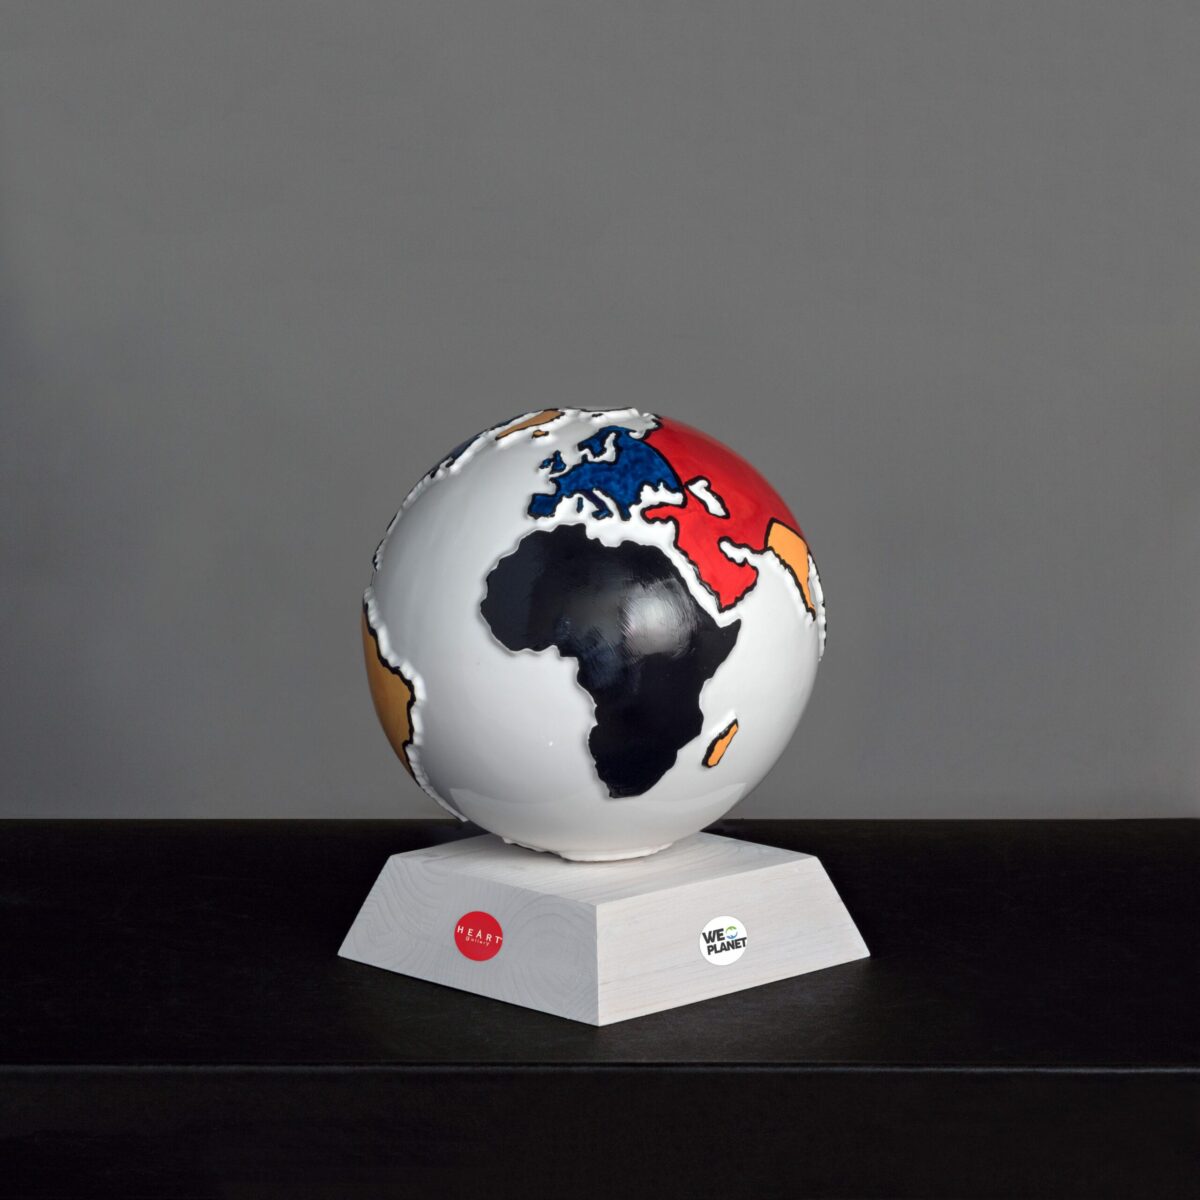 mappamondo in ceramica bianco con i continenti colorati in rosso, giallo, blu e nero secondo lo stile Mondrian